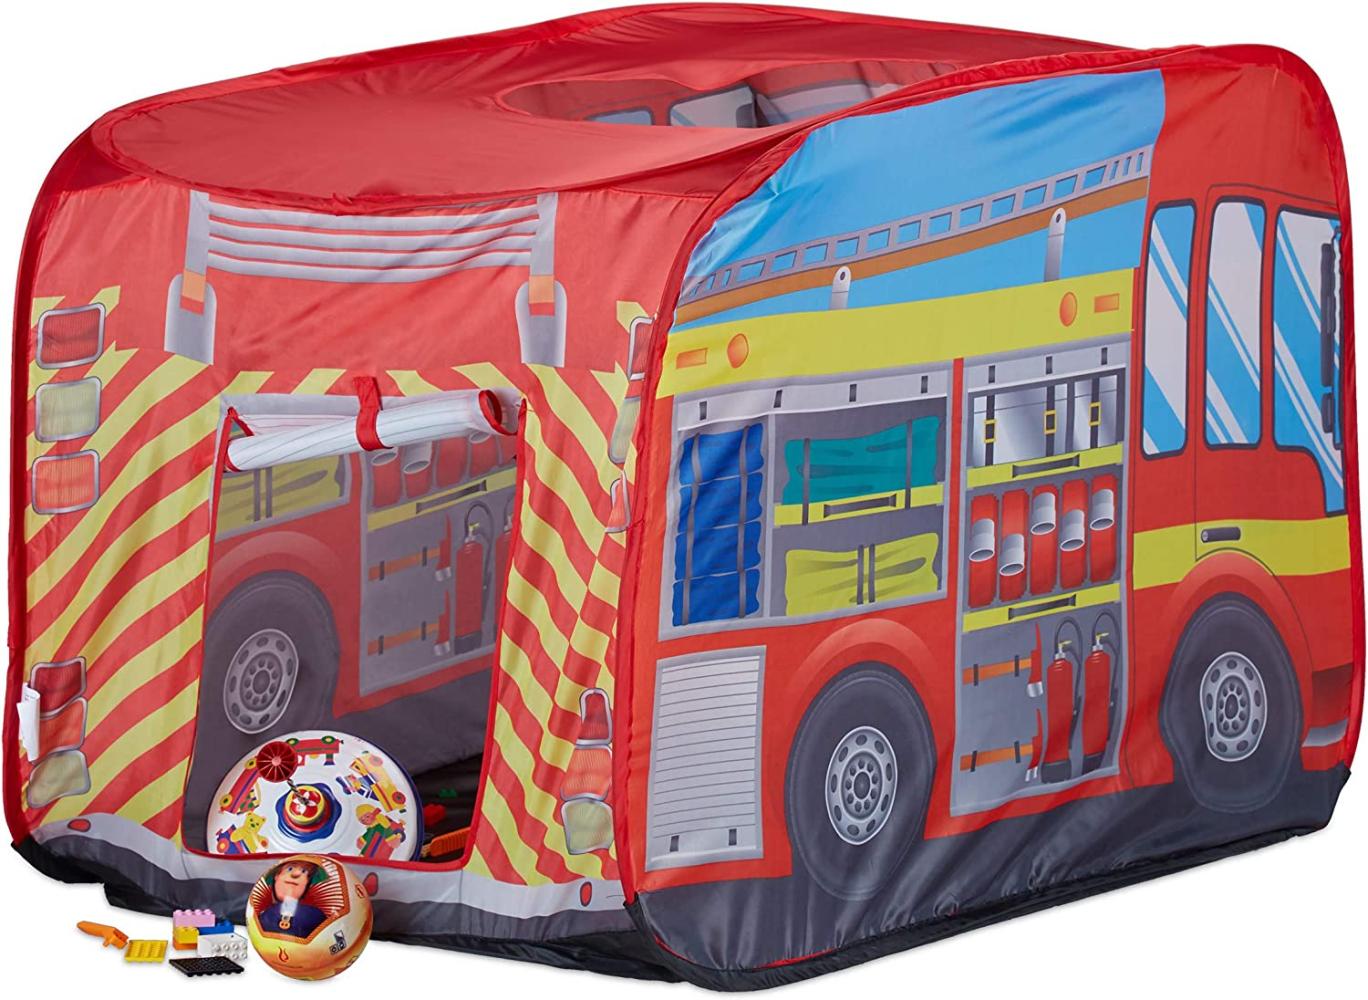 Relaxdays Spielzelt Feuerwehr, Pop up Kinderzelt mit Automotiv, für Drinnen und Draußen, 70x110x70 cm, ab 3 Jahre, rot Bild 1